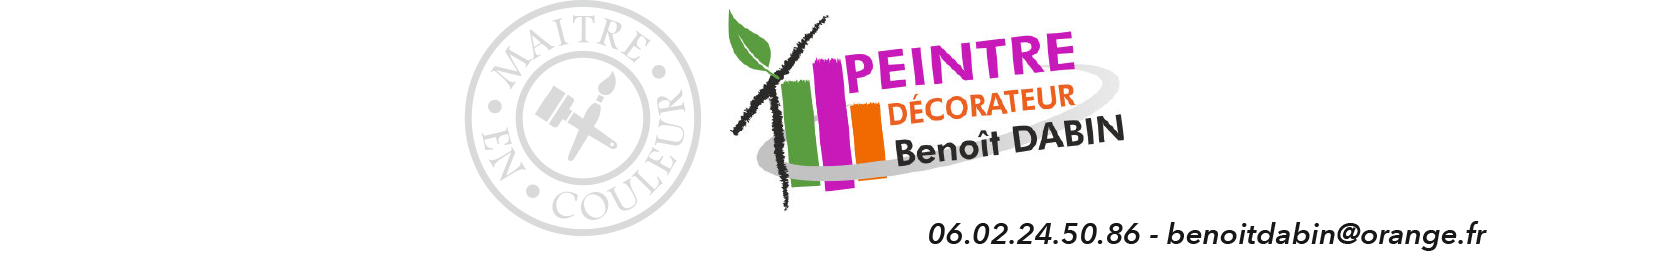 PEINTURE DÉCORATION BENOIT DABIN Logo